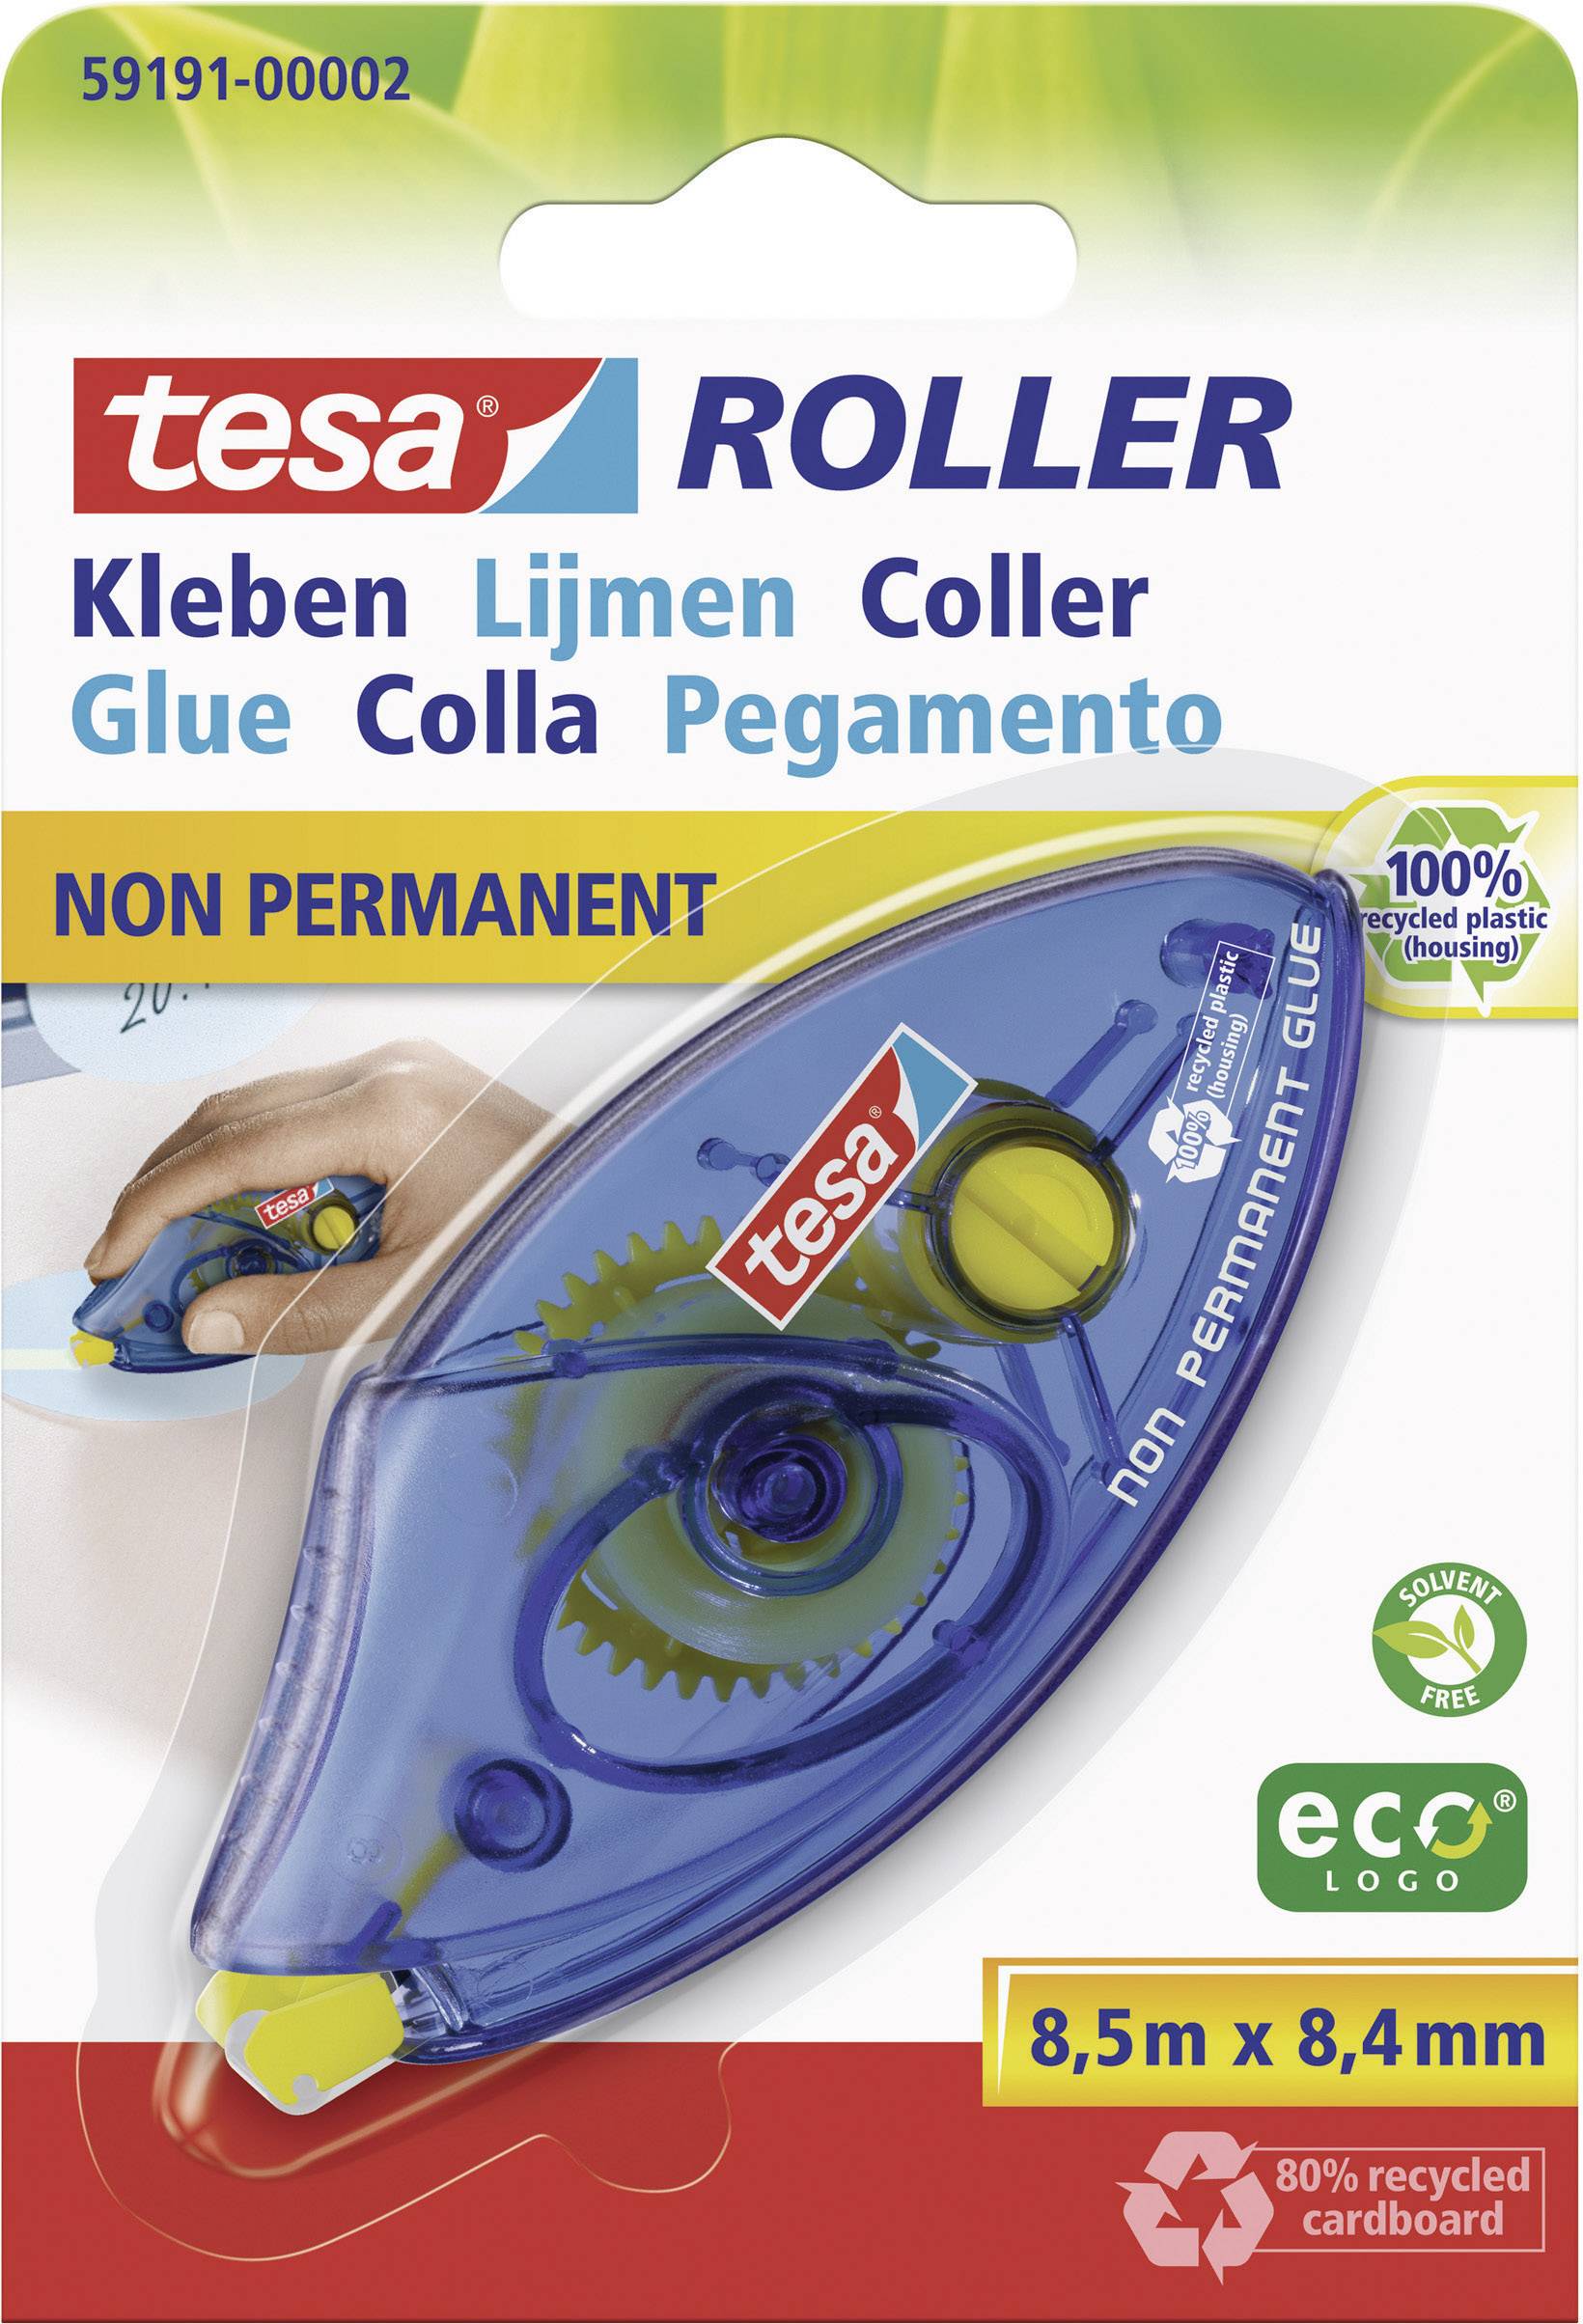 Tesa Roller Non Permanent Gluing Ecologo Disposable - Blister